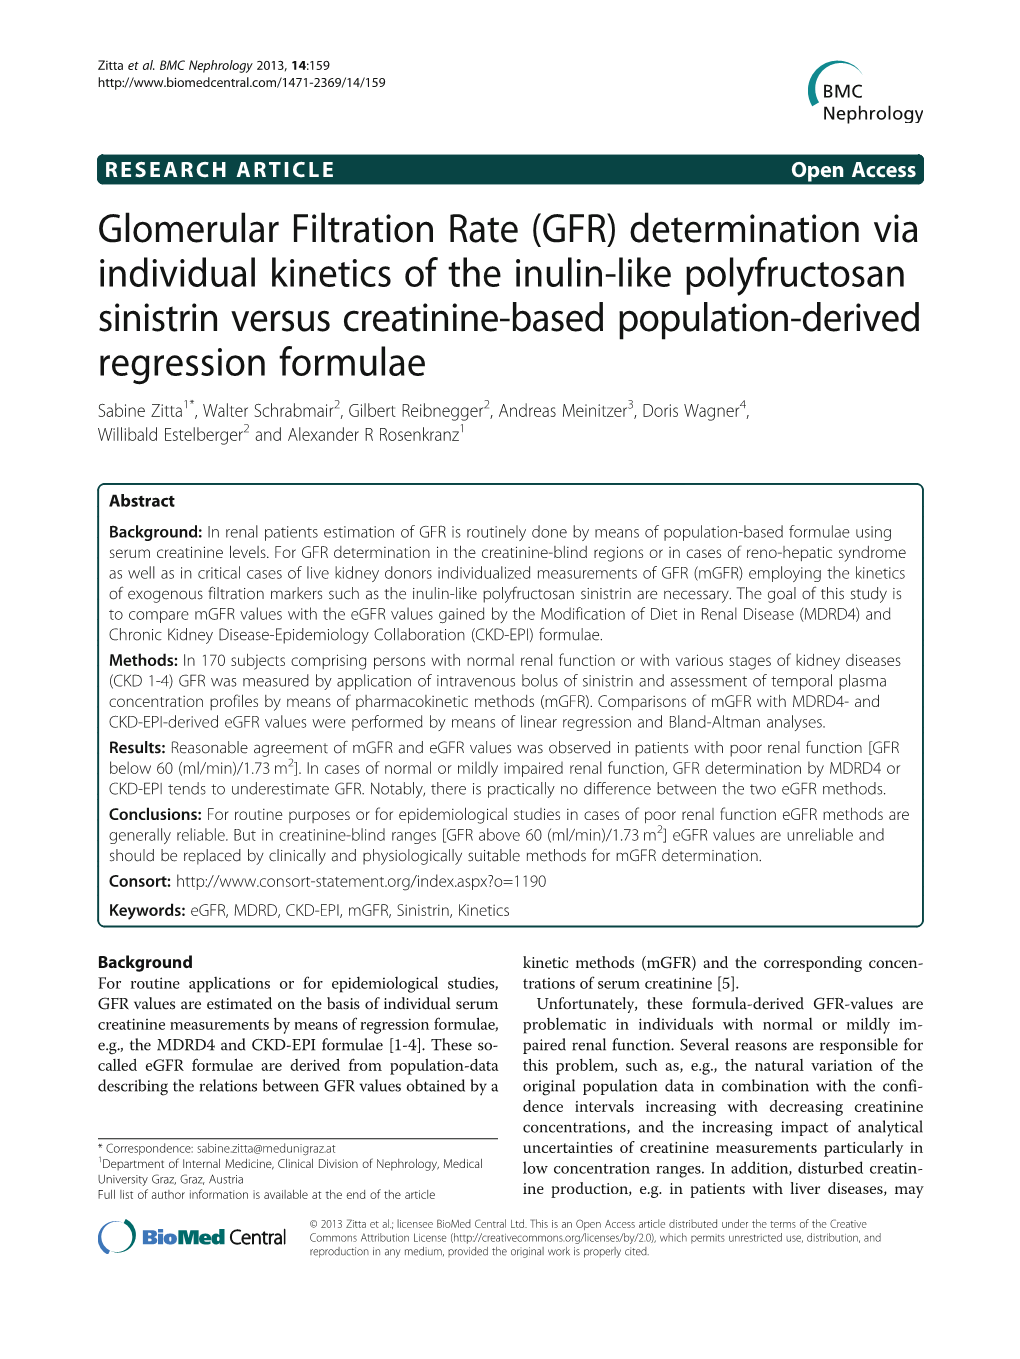 Glomerular Filtration Rate